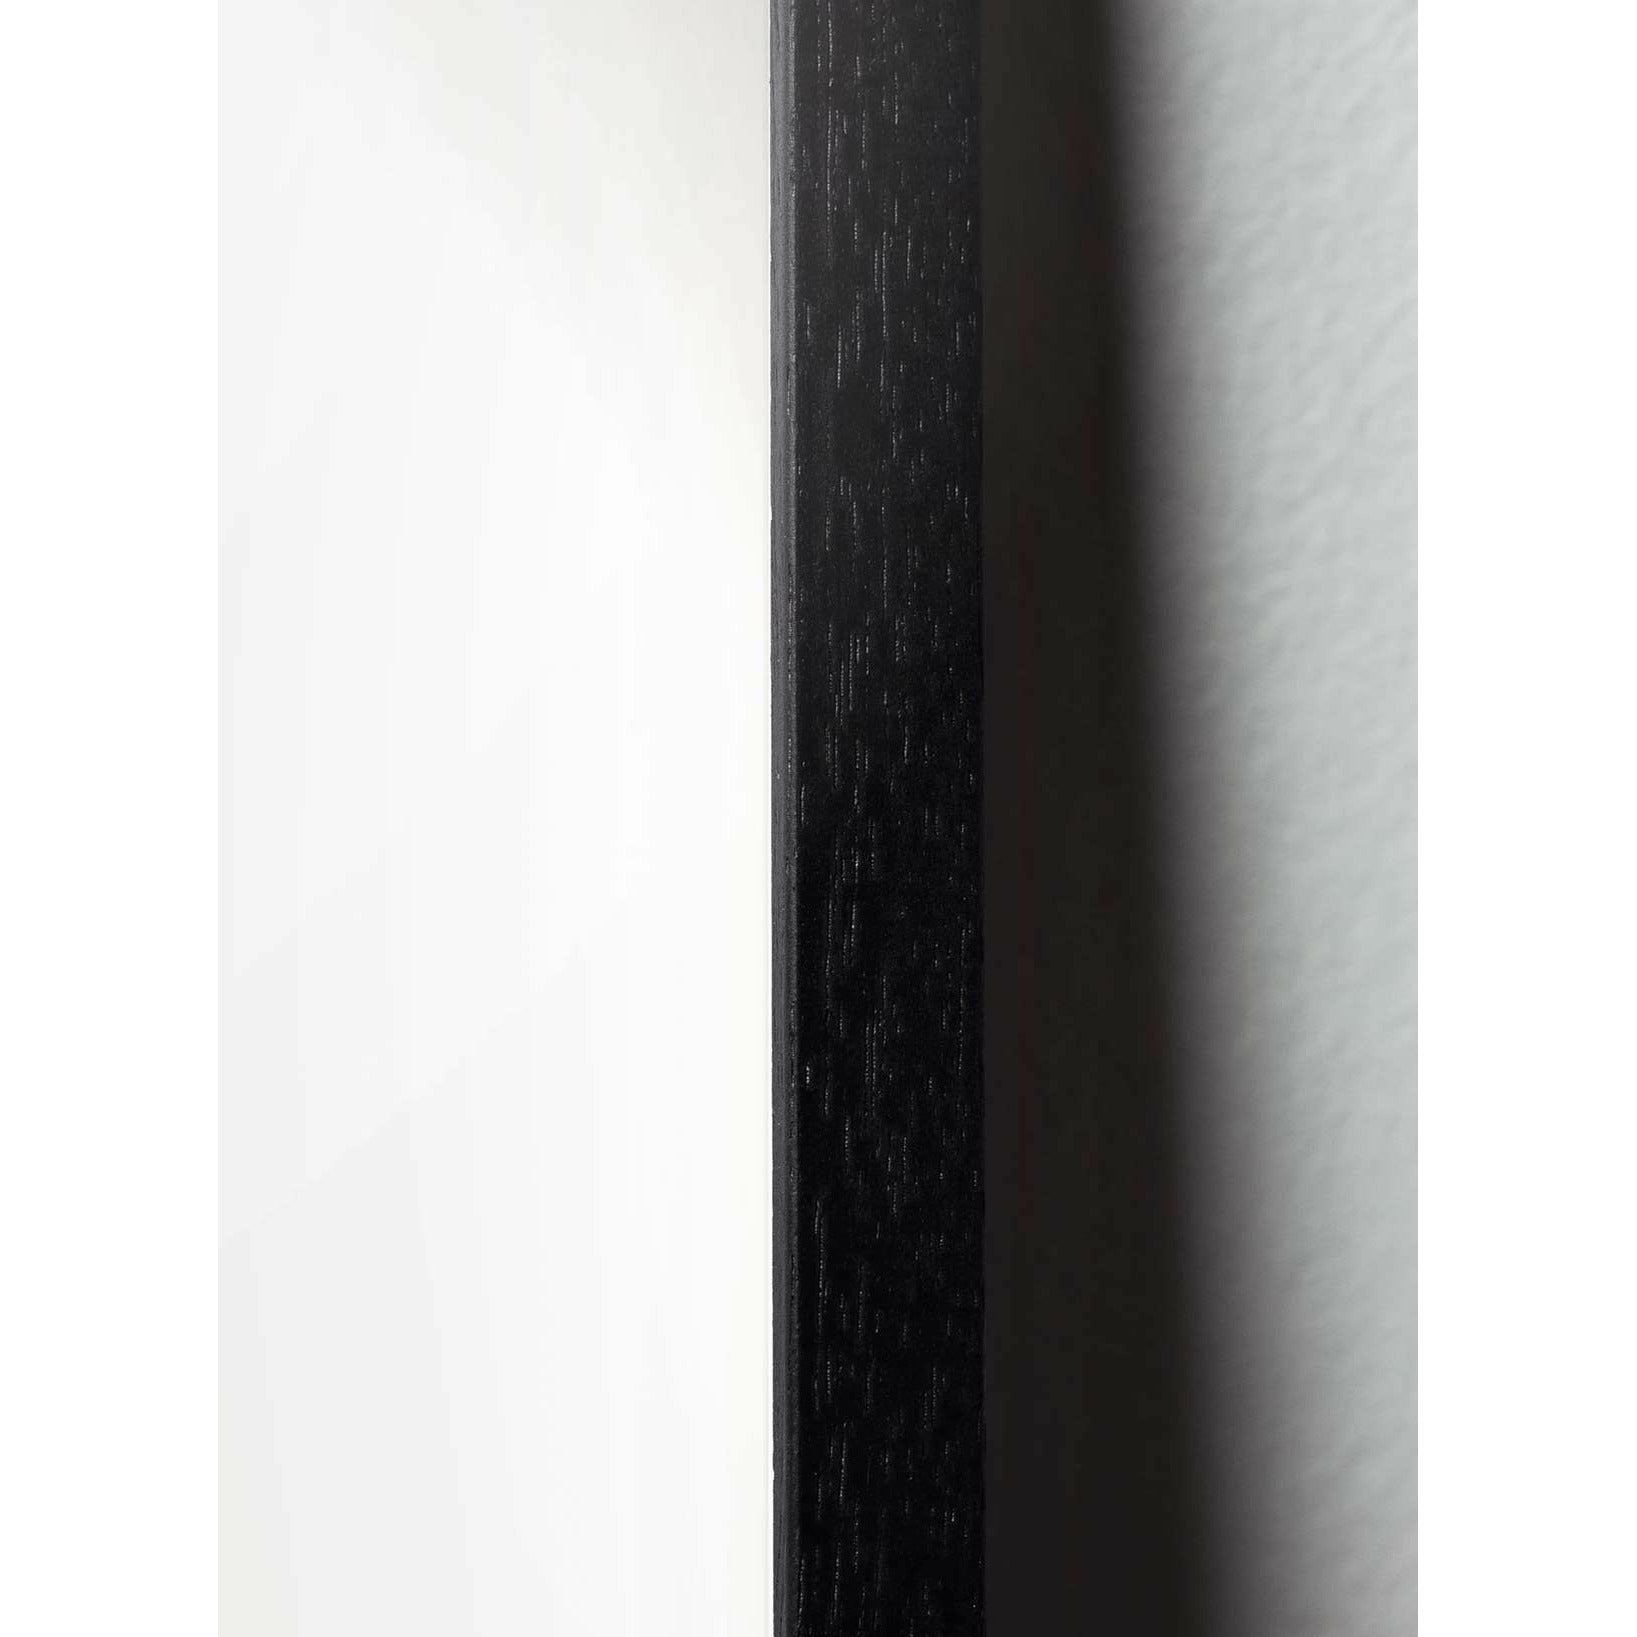 Pomysły plakat linii stożkowej, rama w czarnym lakierowanym drewnie A5, białe tło